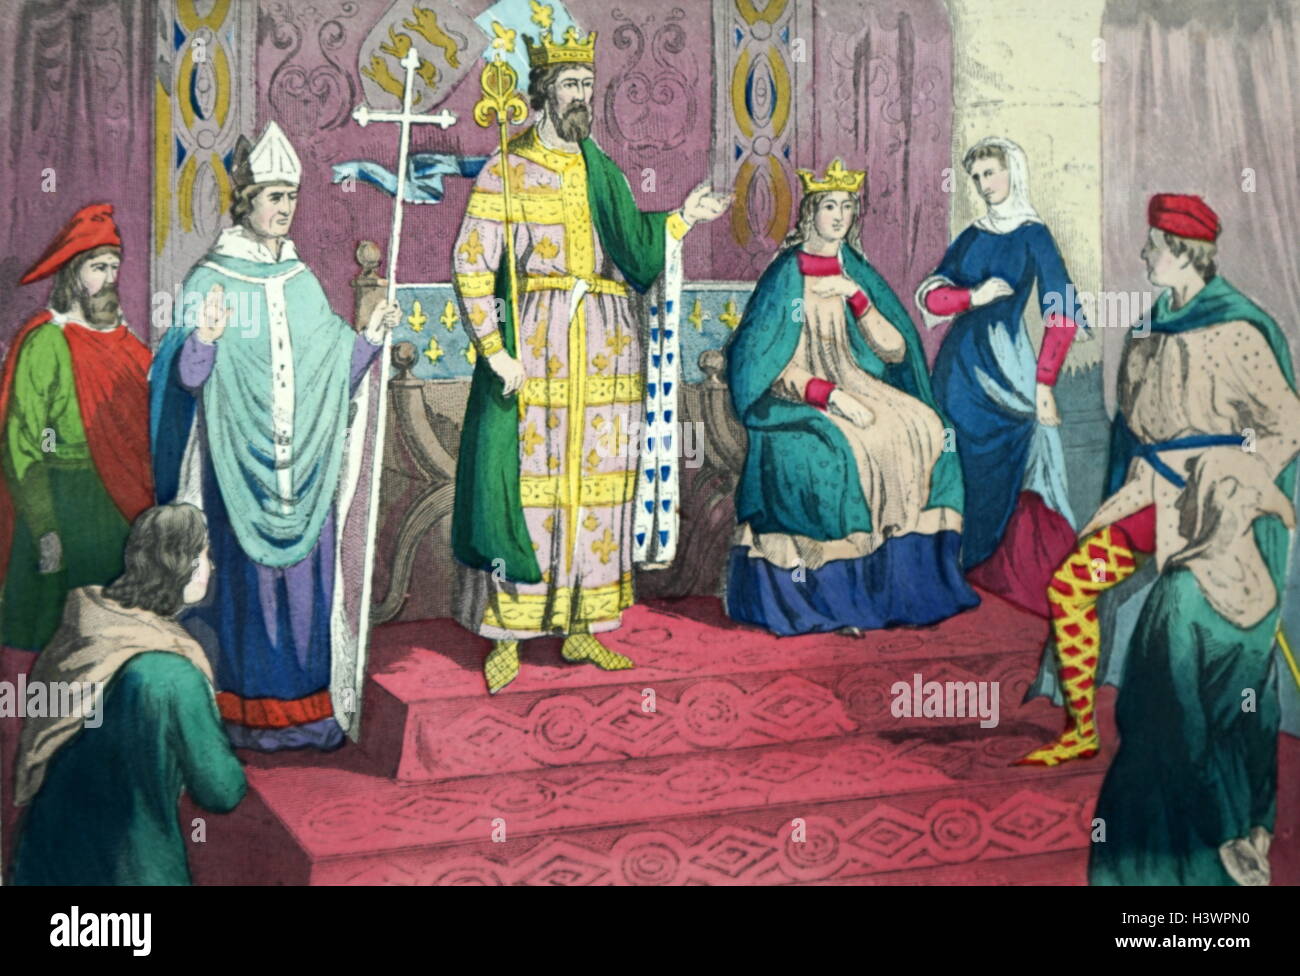 Illustration couleur illustrant les costumes du 13ème siècle en Angleterre, y compris : un homme, le médecin, l'évêque, le roi, la reine, Dame, noble, et rustique. En date du 13e siècle Banque D'Images